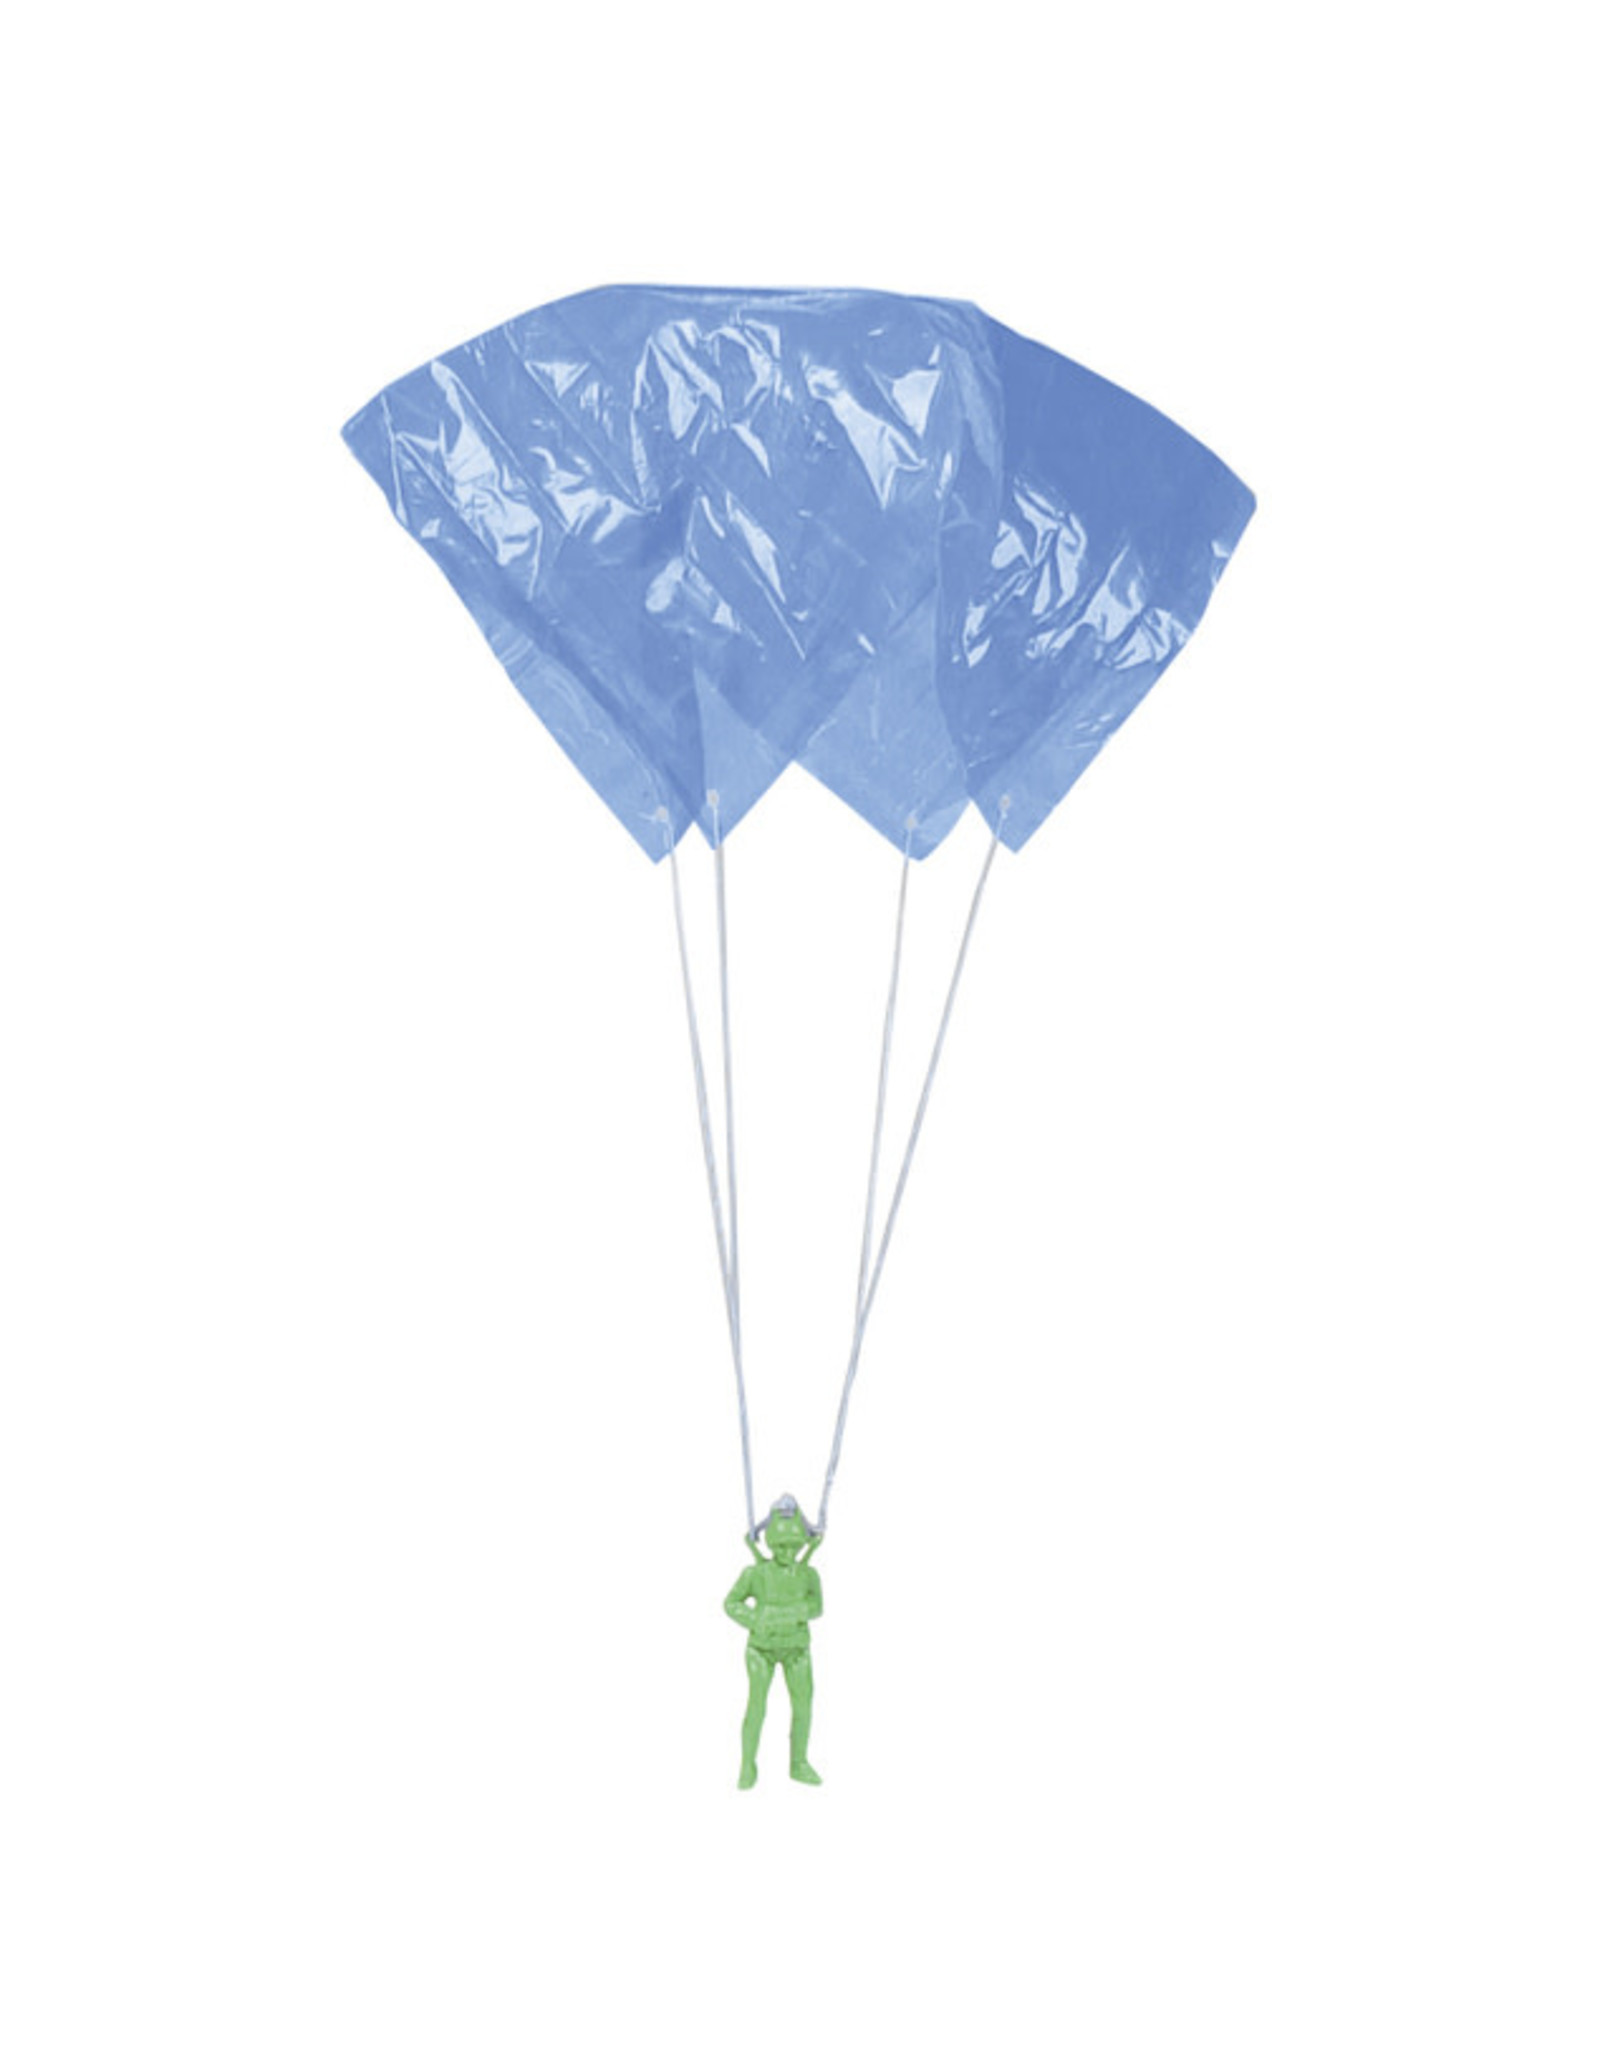 Toysmith Giant Parachuter